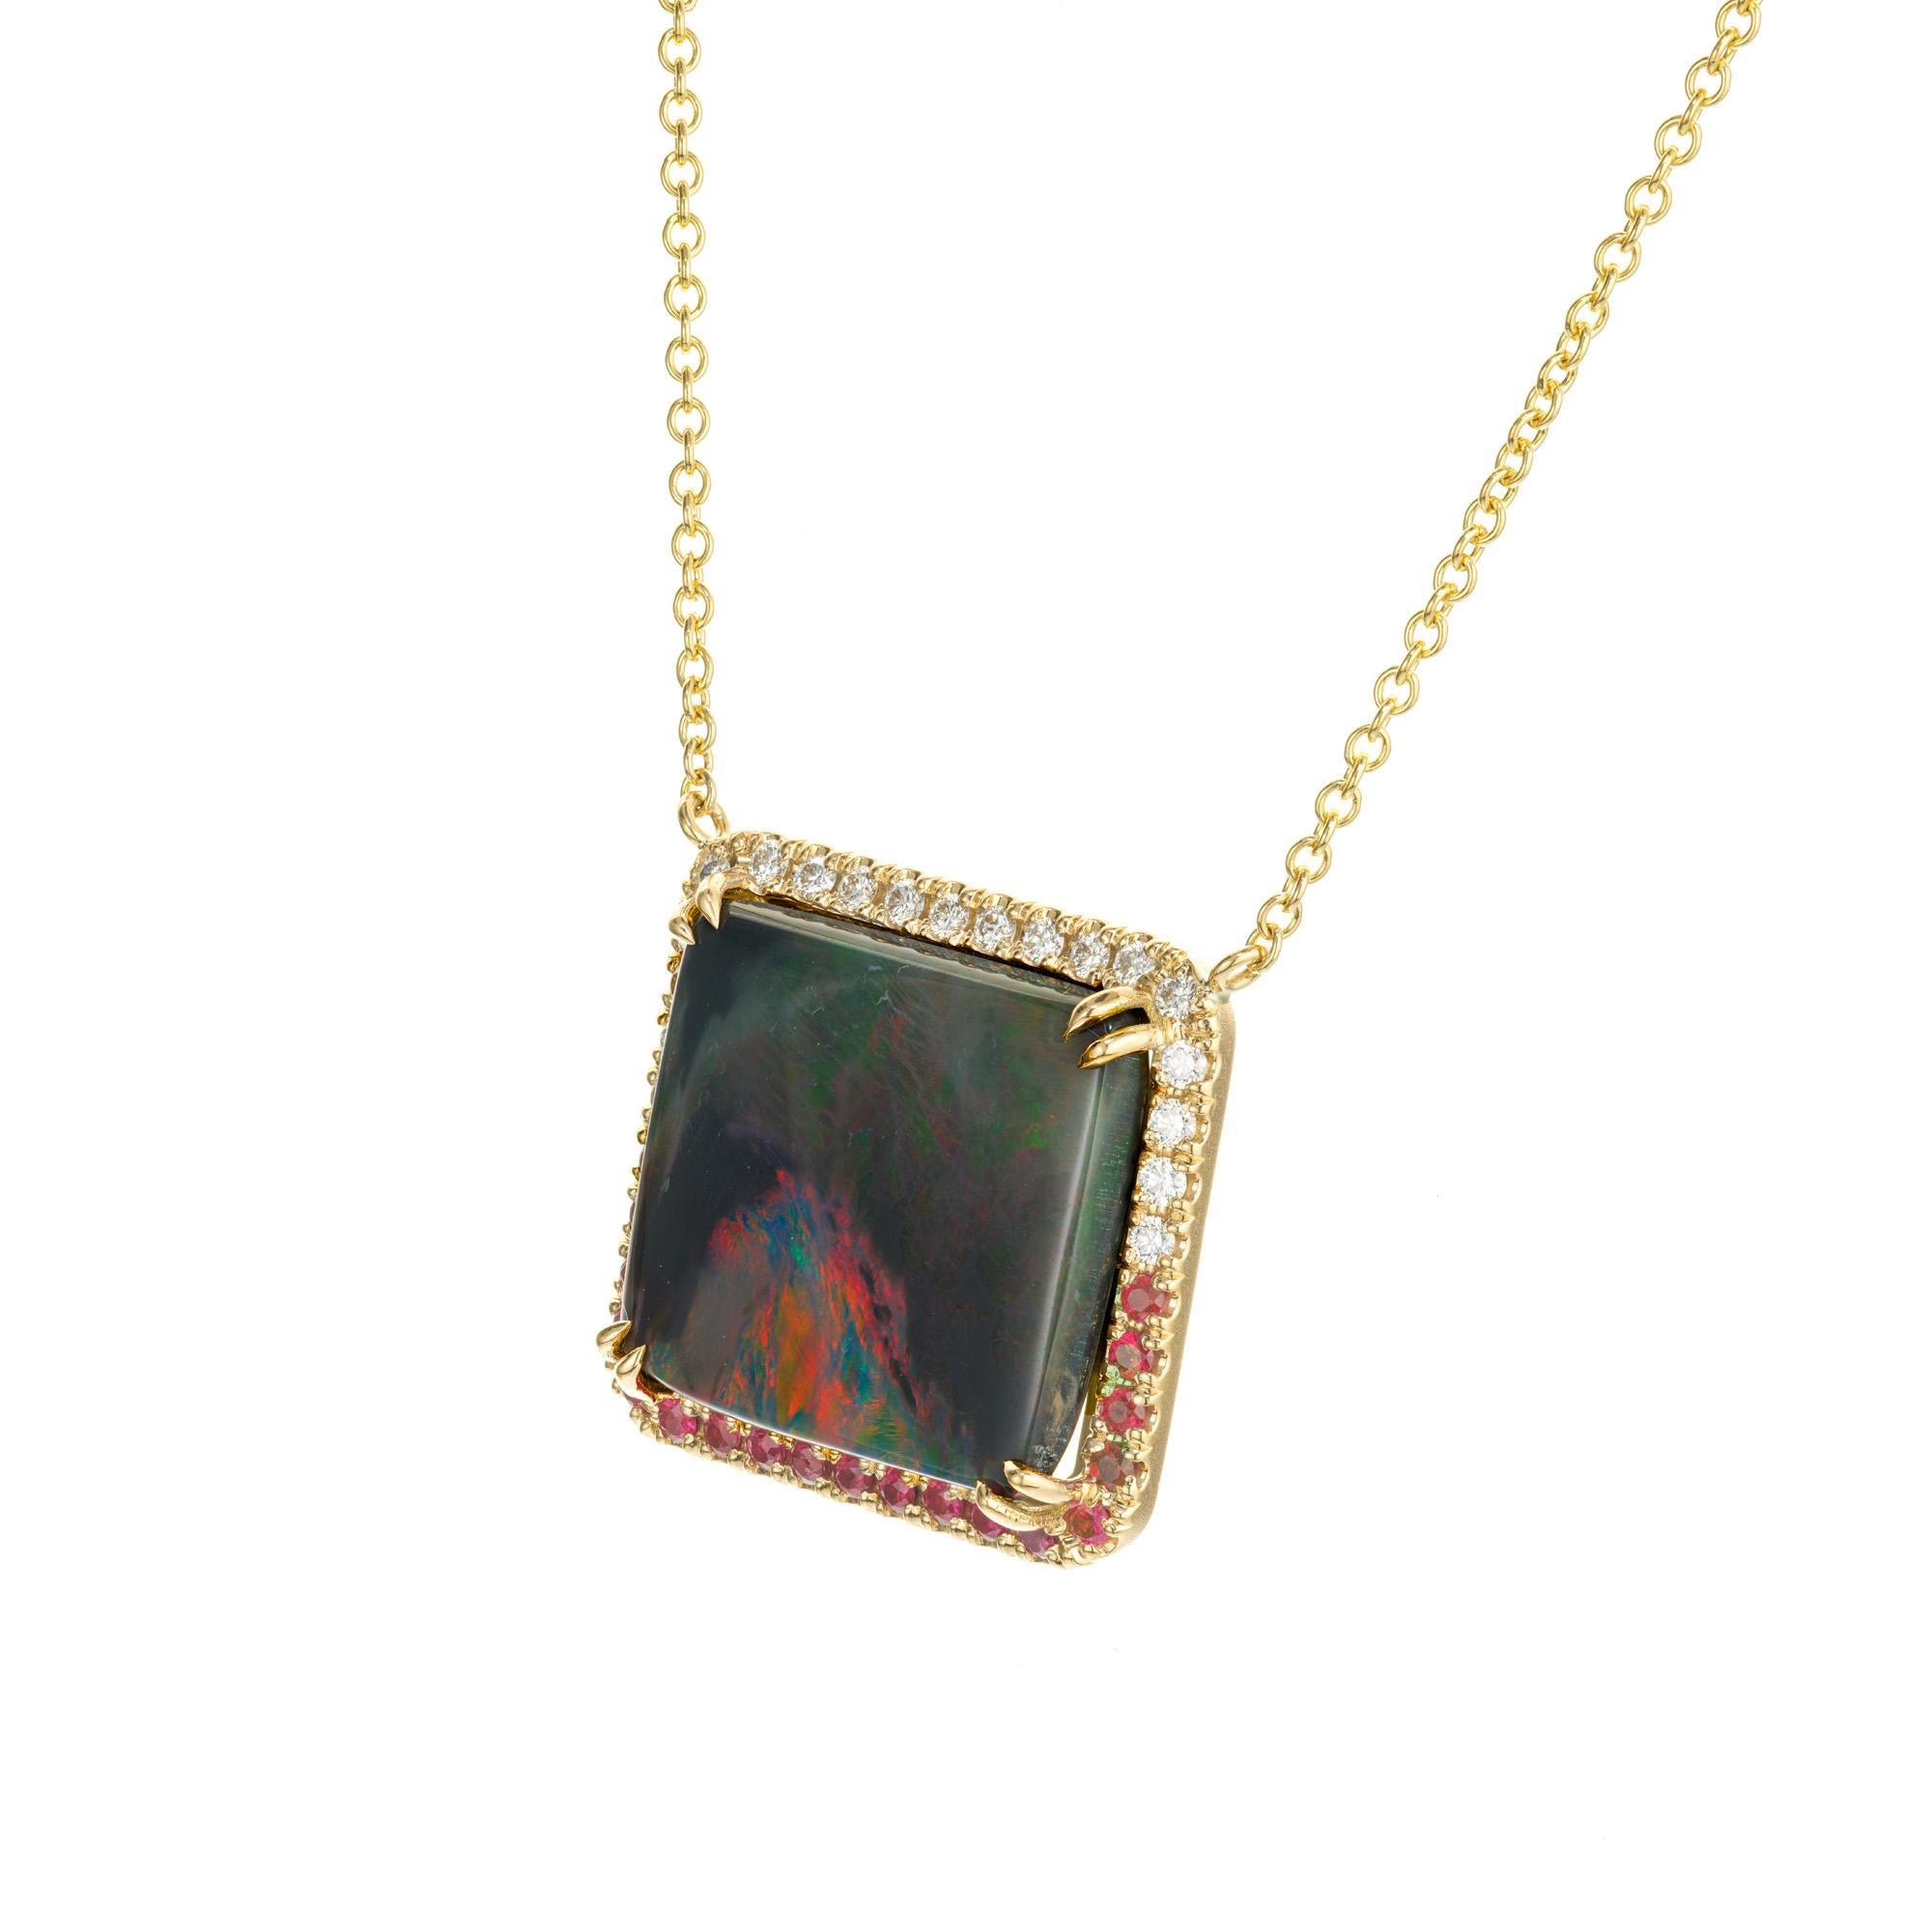 Collier pendentif en opale, diamant et rubis. Opale carrée de 13,74 cts certifiée par le GIA avec un halo de 19 diamants ronds et 19 rubis ronds sertis en or jaune 18k. chaîne de 18 pouces. La couleur de fond de l'opale est grise avec des éclats